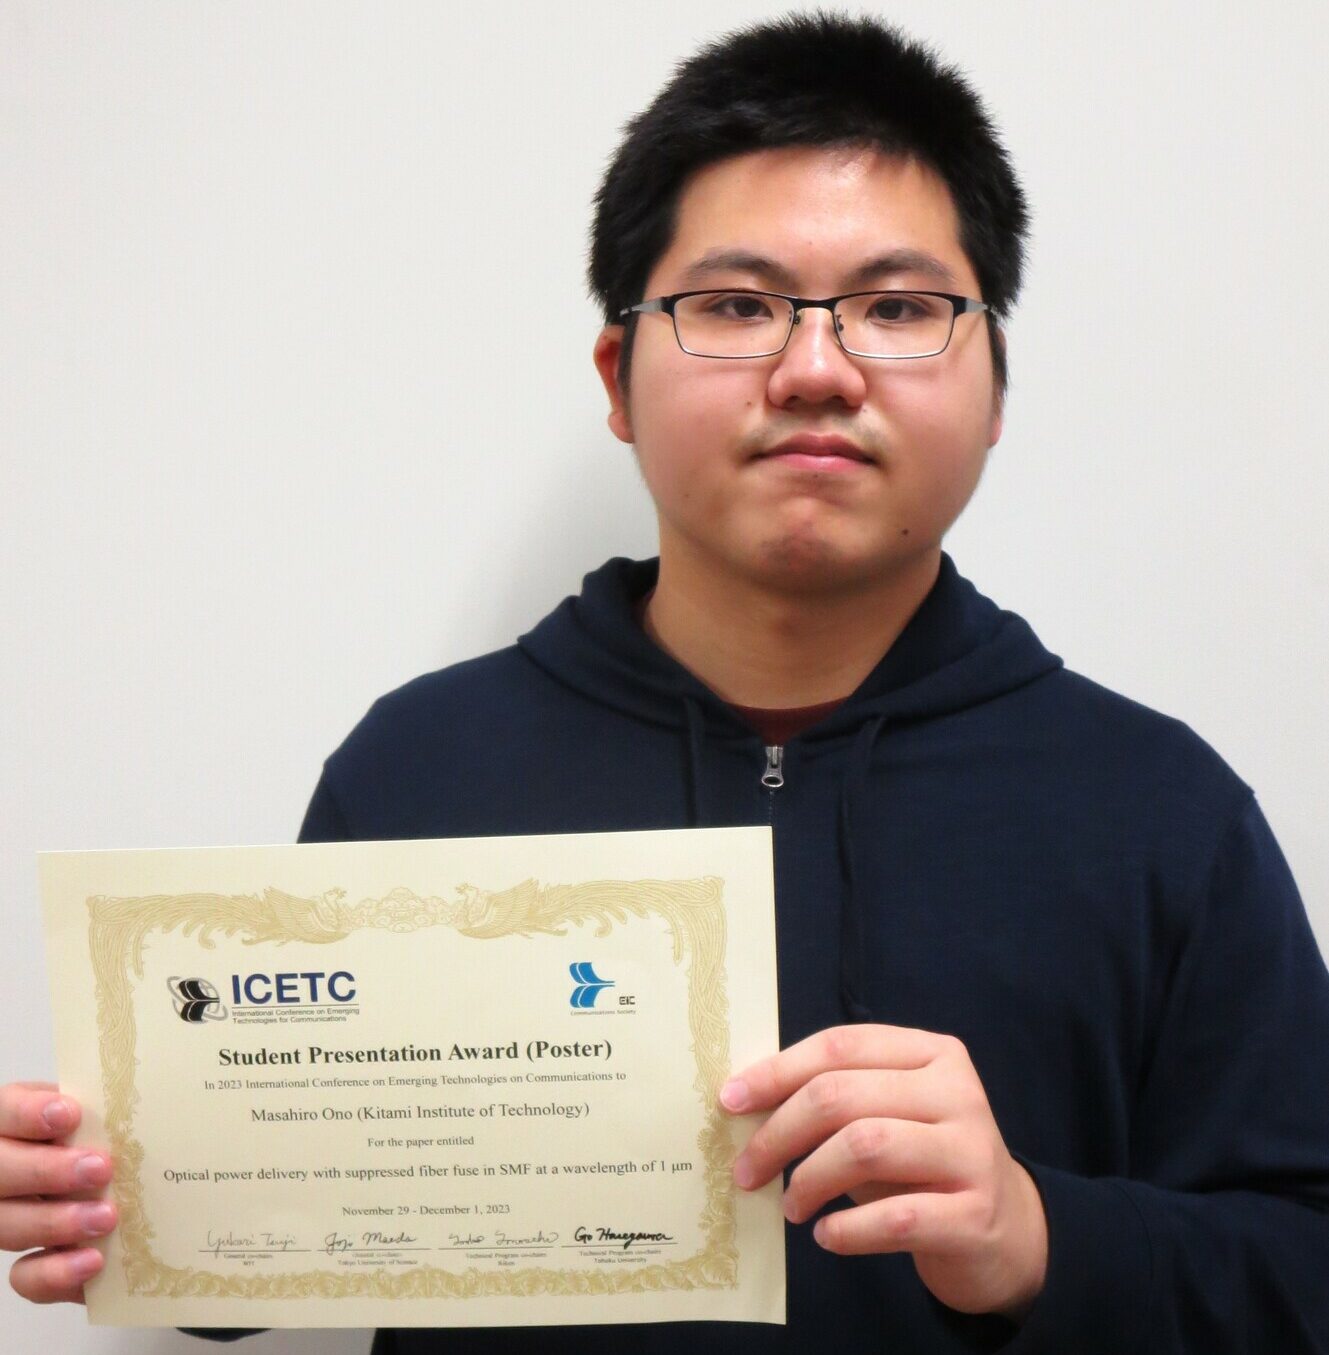 【北見工業大学】大学院生が国際会議「ICETC2023」においてStudent Presentation Award（Poster）を受賞